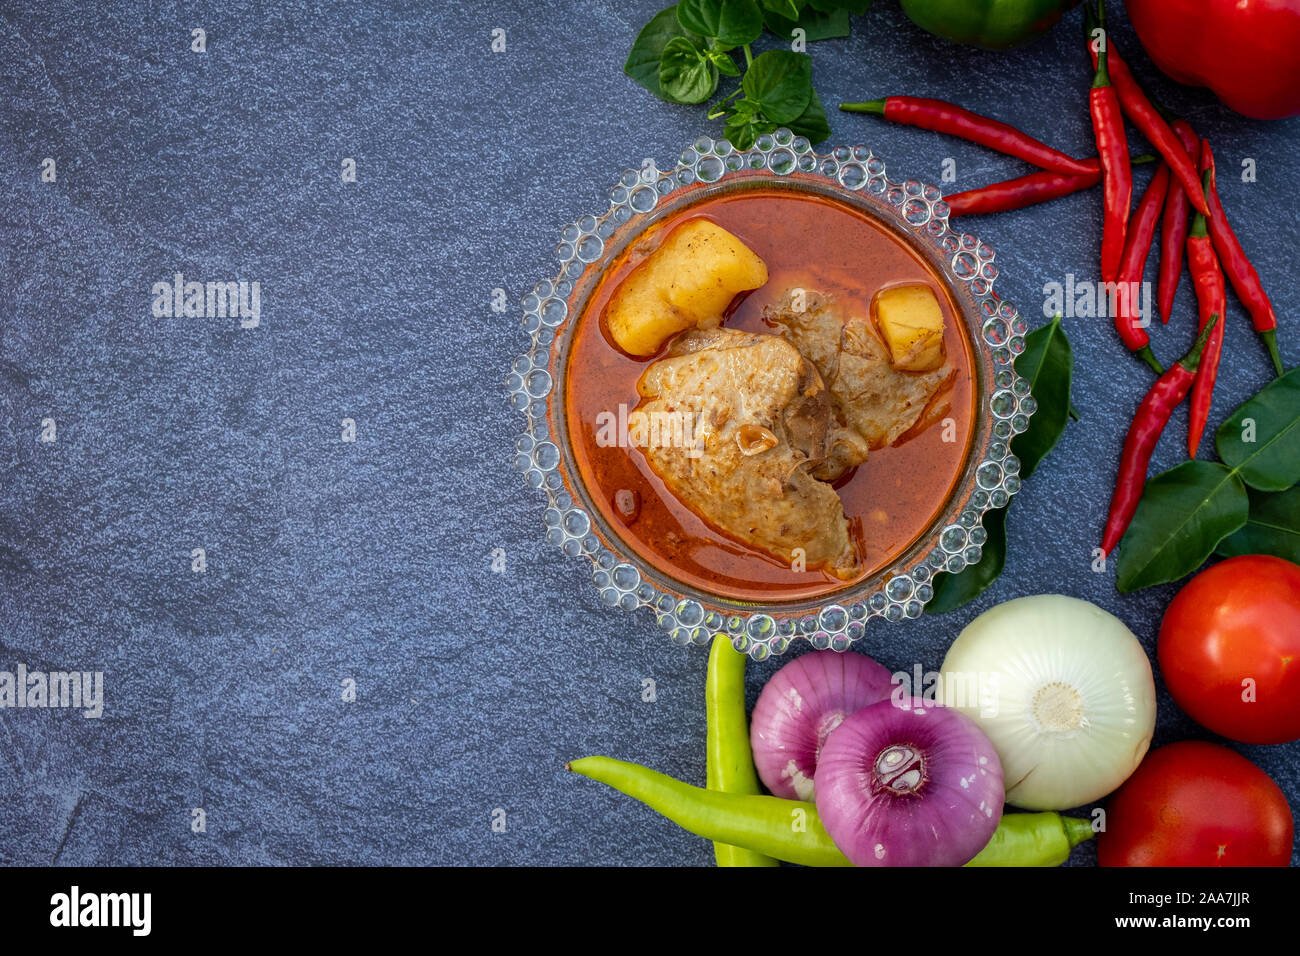 La nourriture asiatique, telles que Thai red curry Vue supérieure avec copie espace.Les légumes et les ingrédients sont autour de la bonne cuisine design sur l'arrière-plan en pierre. Banque D'Images